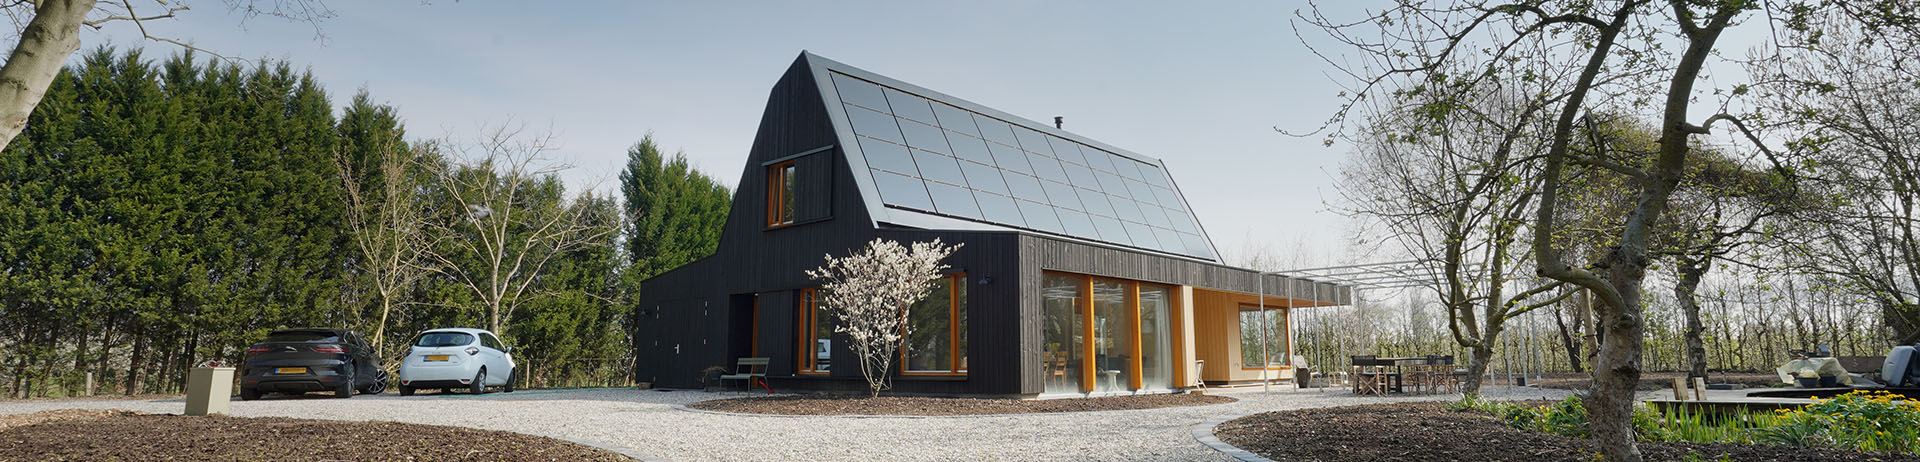 Huis met zonnepanelen dak